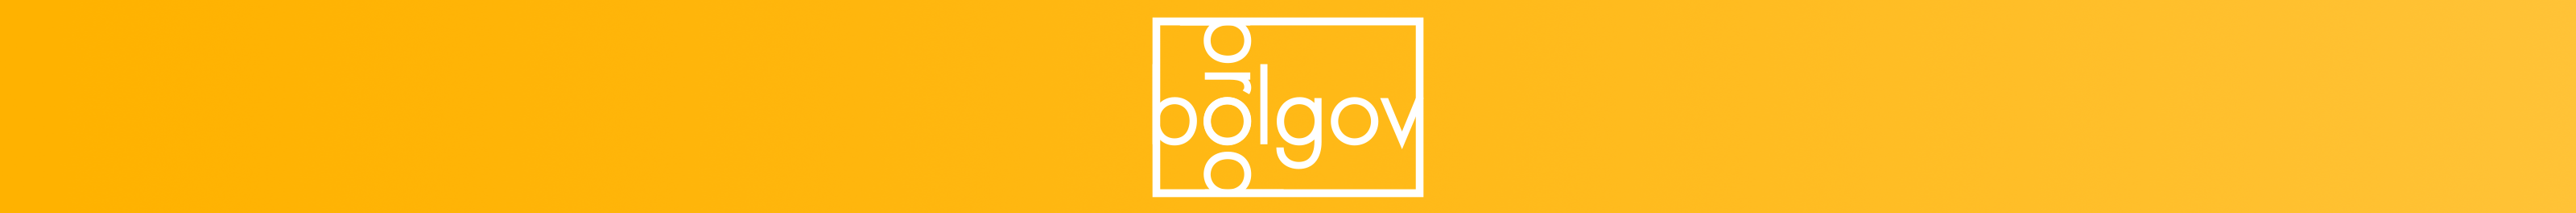 Ilia Bolgov's profile banner